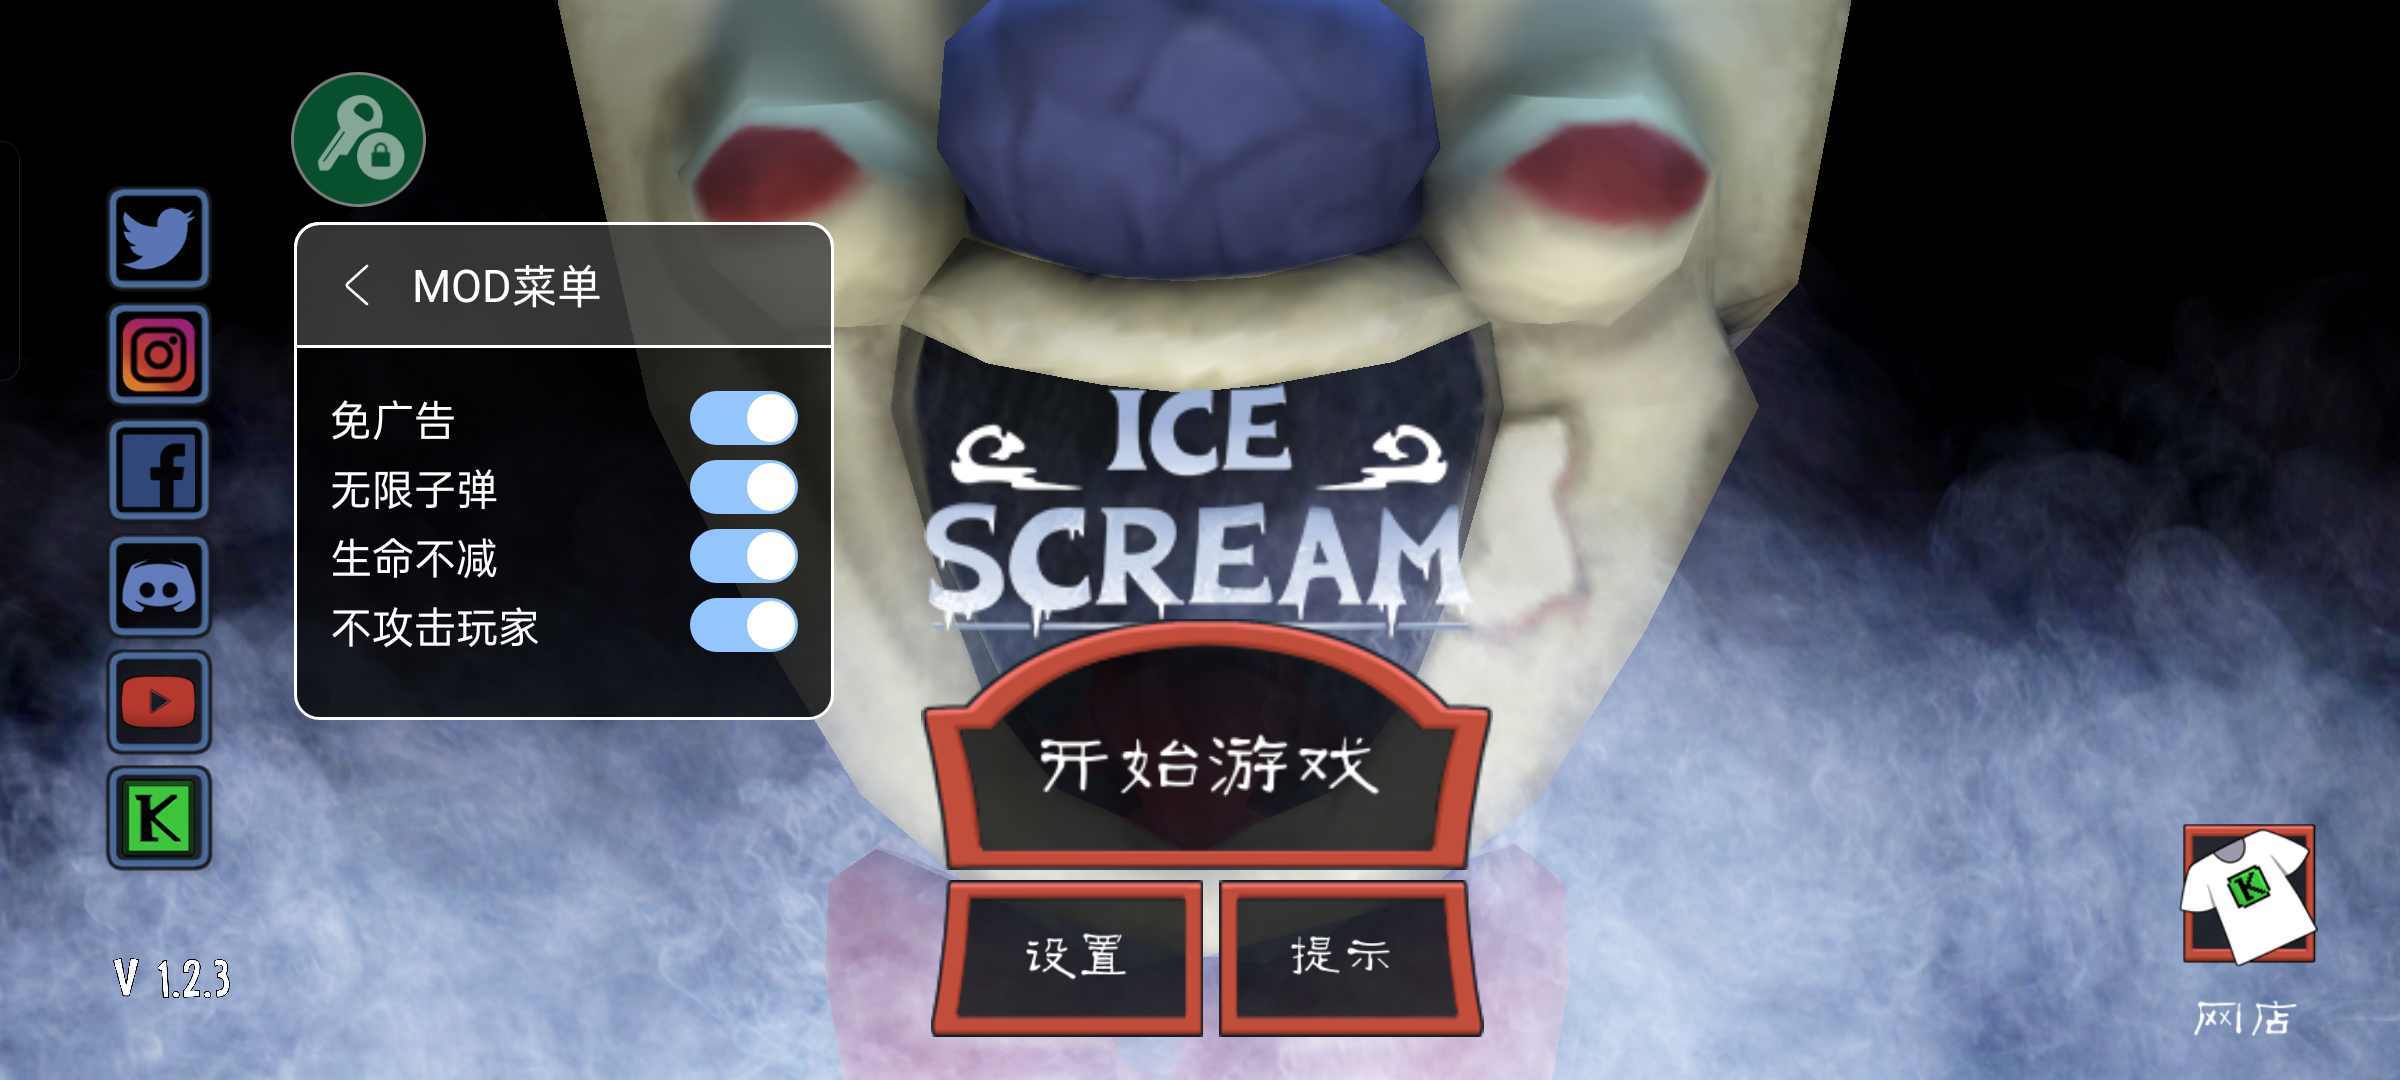 恐怖冰淇淋车